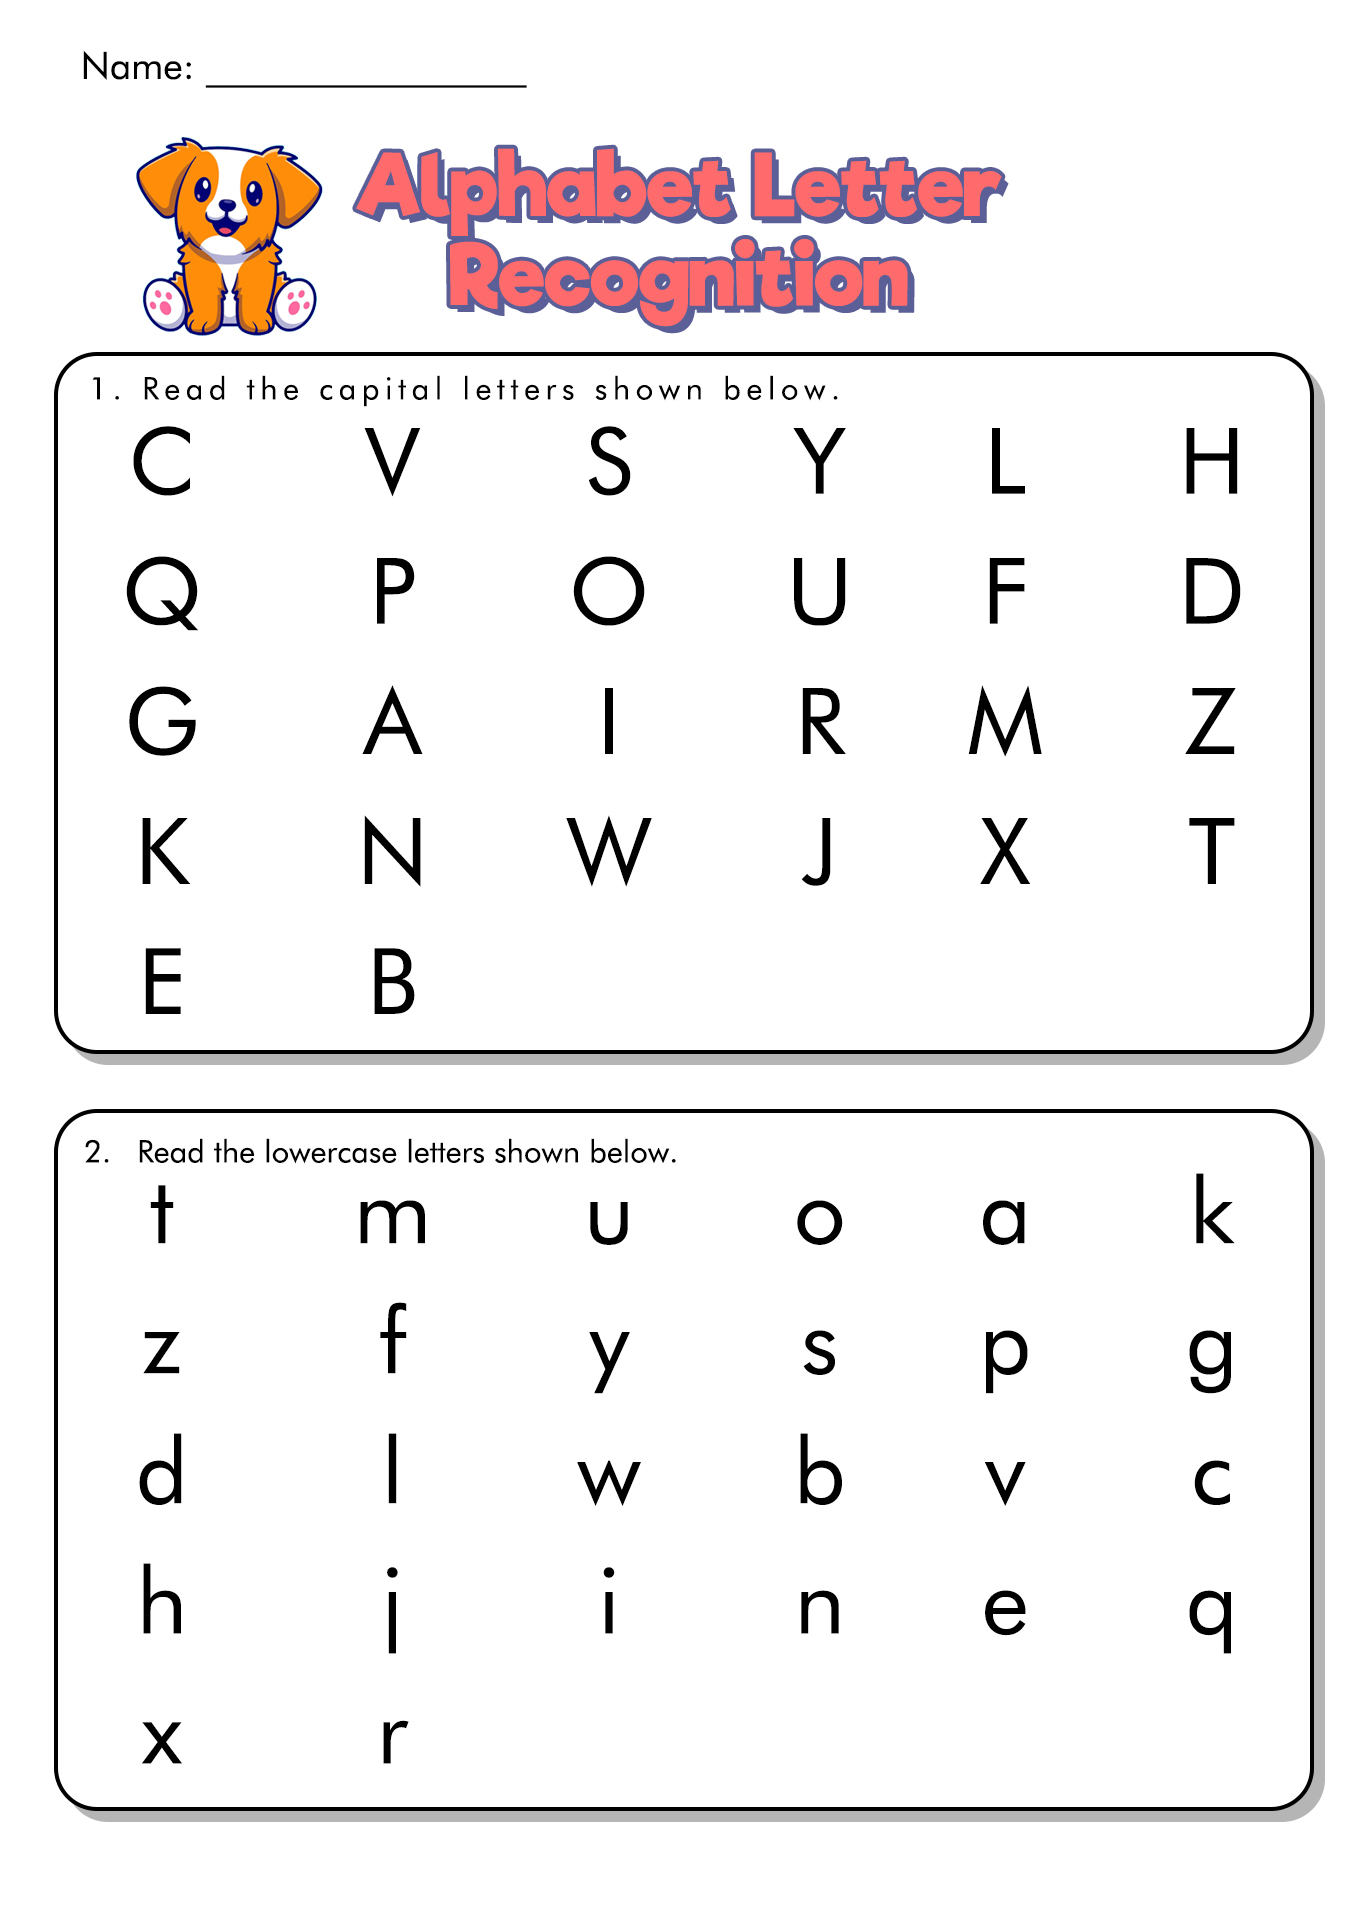 Alphabet Recognition Assessment Worksheet Image